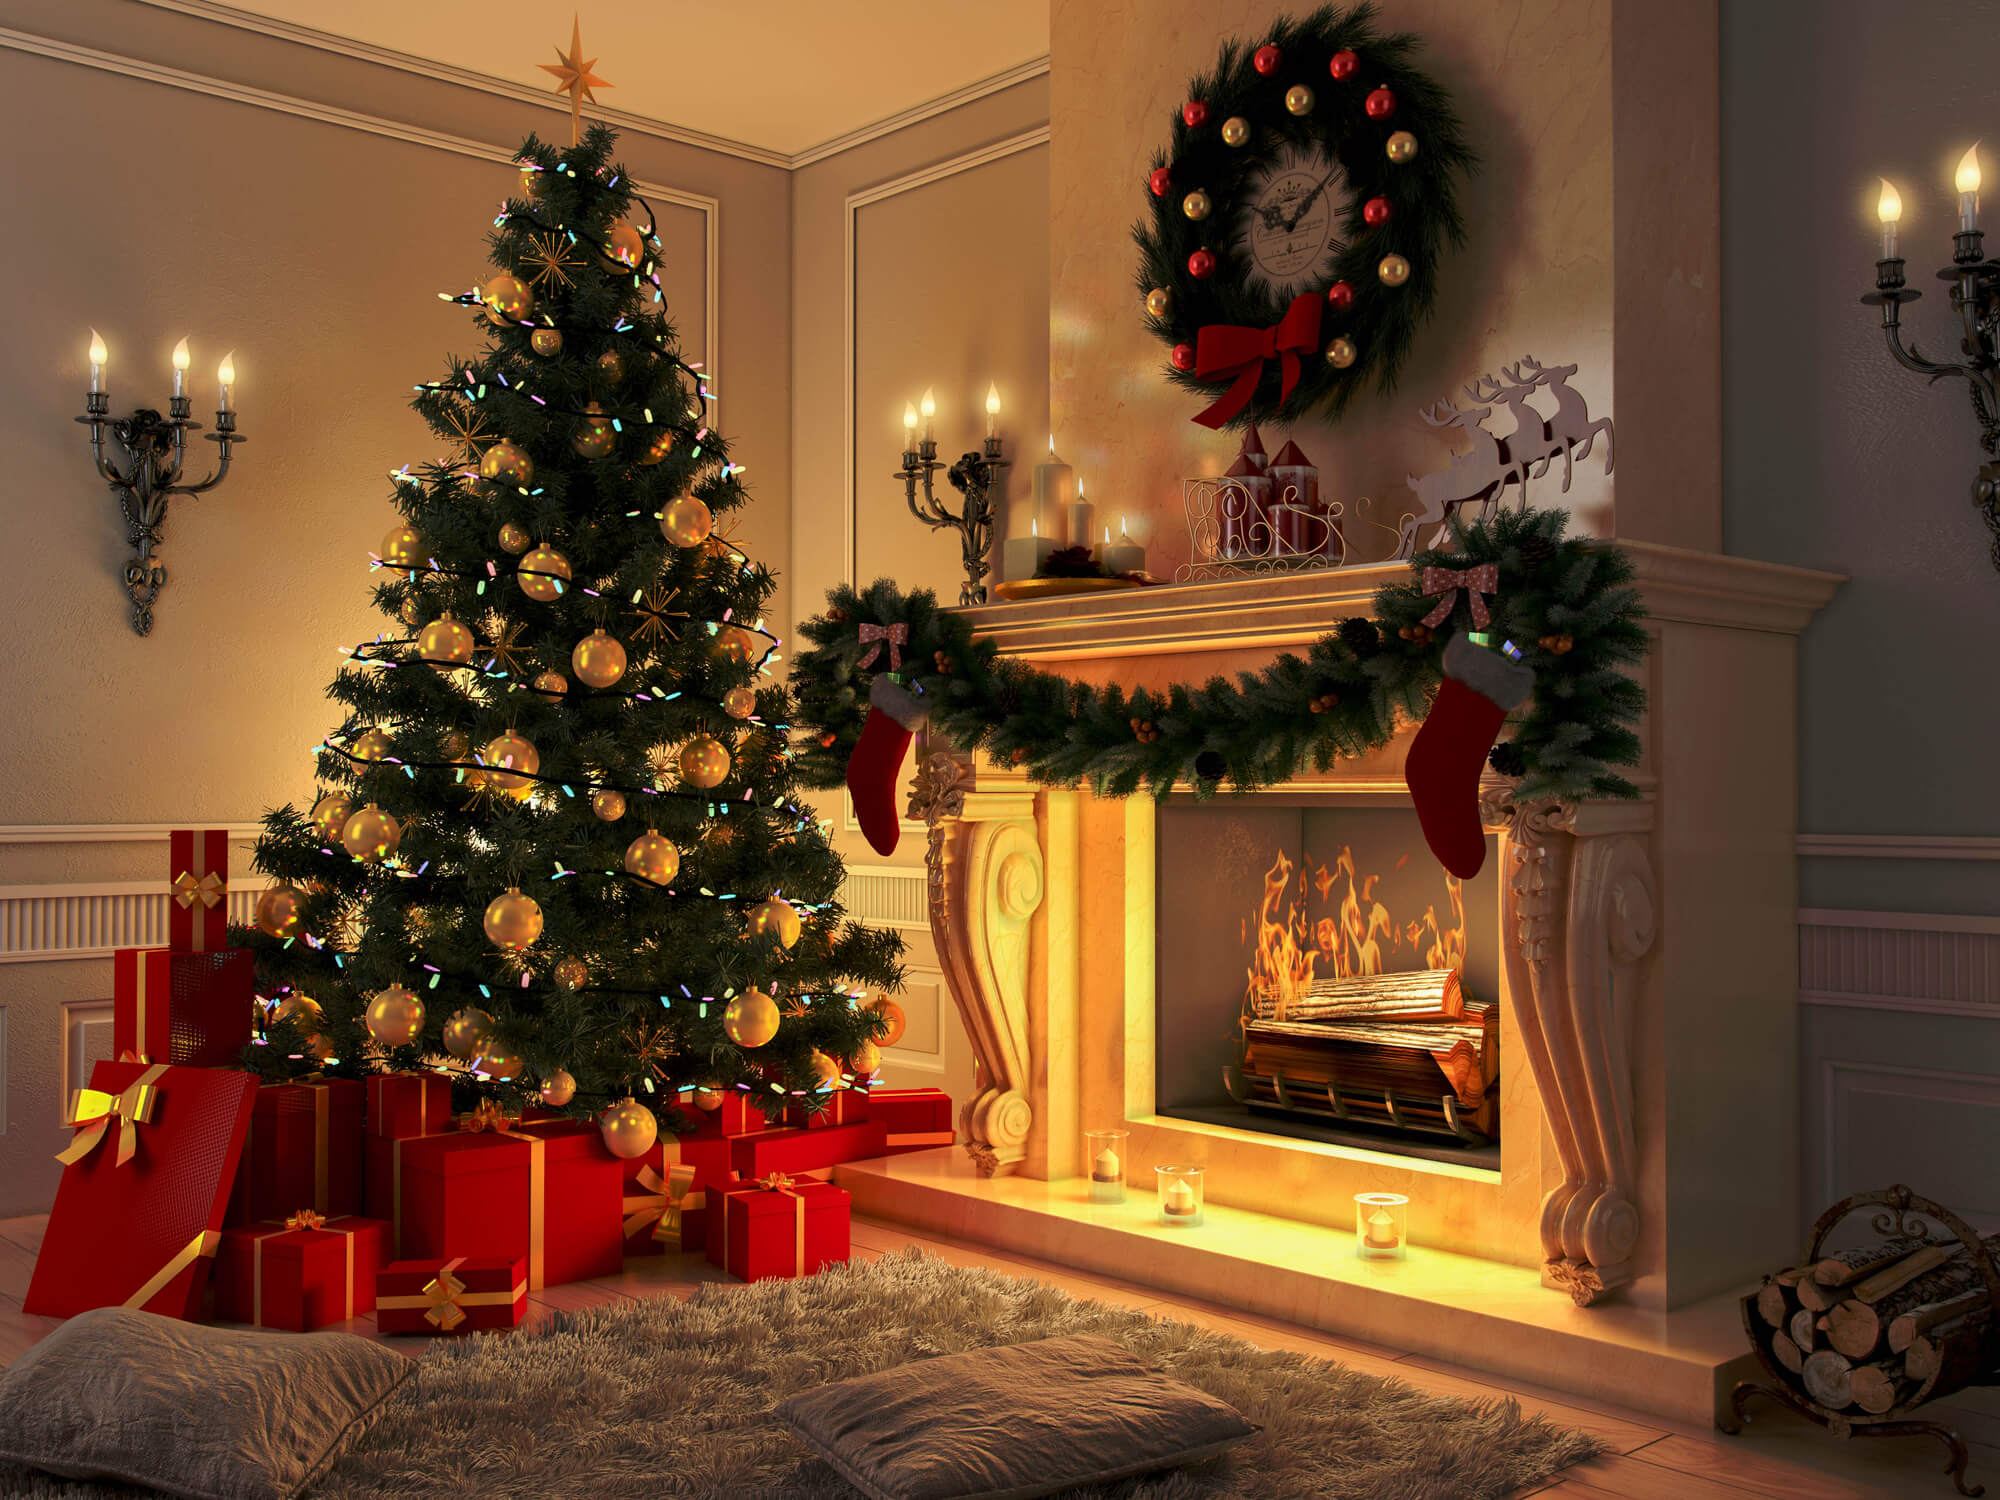 Decoração de Natal: confira 5 ideias para arrasar na decoração!